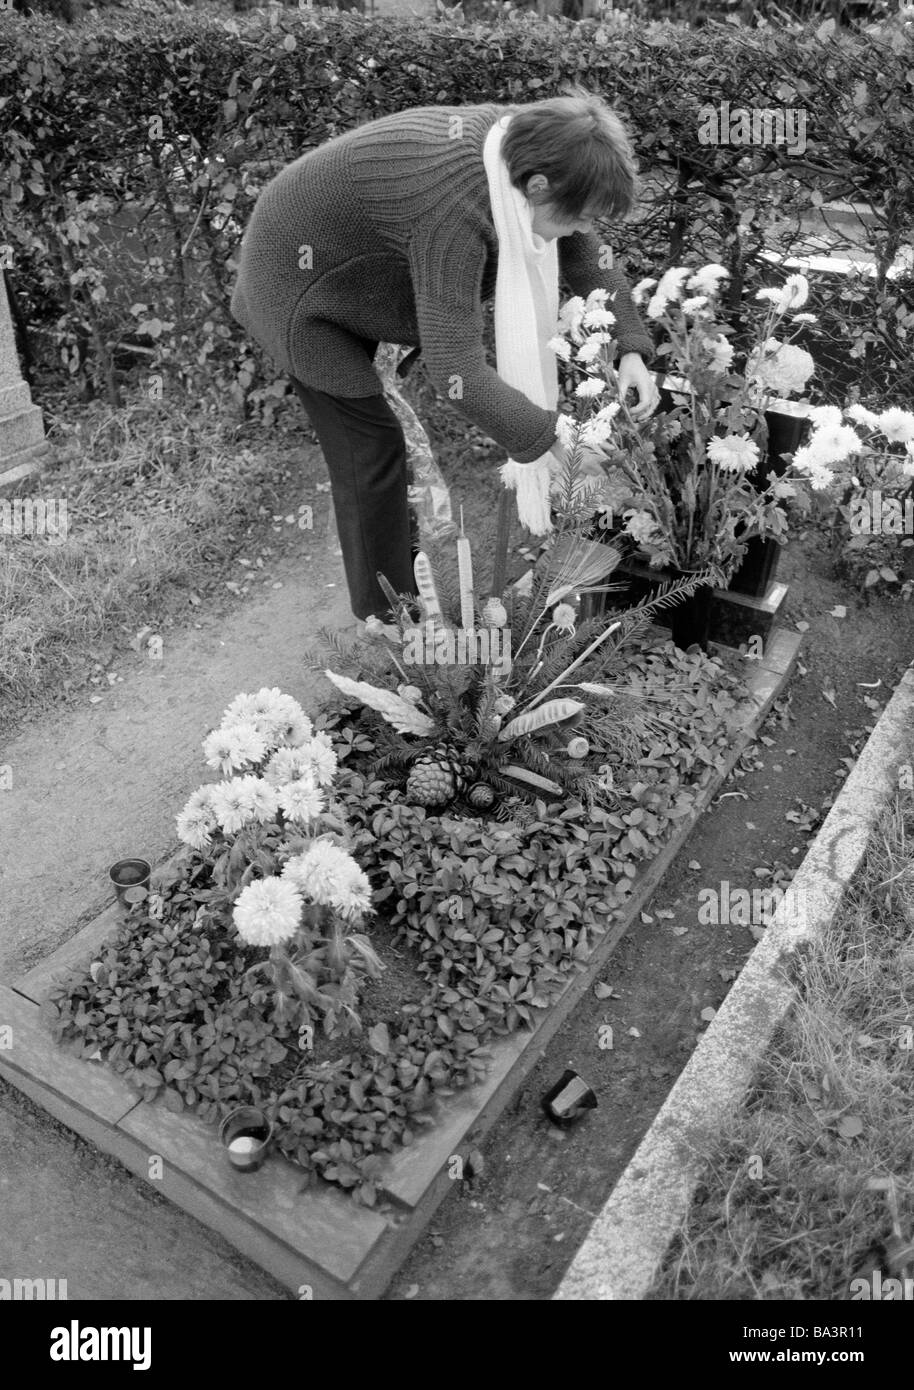 Ottanta, foto in bianco e nero, persone morte, lutto, sagrato, tomba, giovane donna, guardando dopo una grave, fiori, di età compresa tra i 25 e i 30 anni, Monika Foto Stock